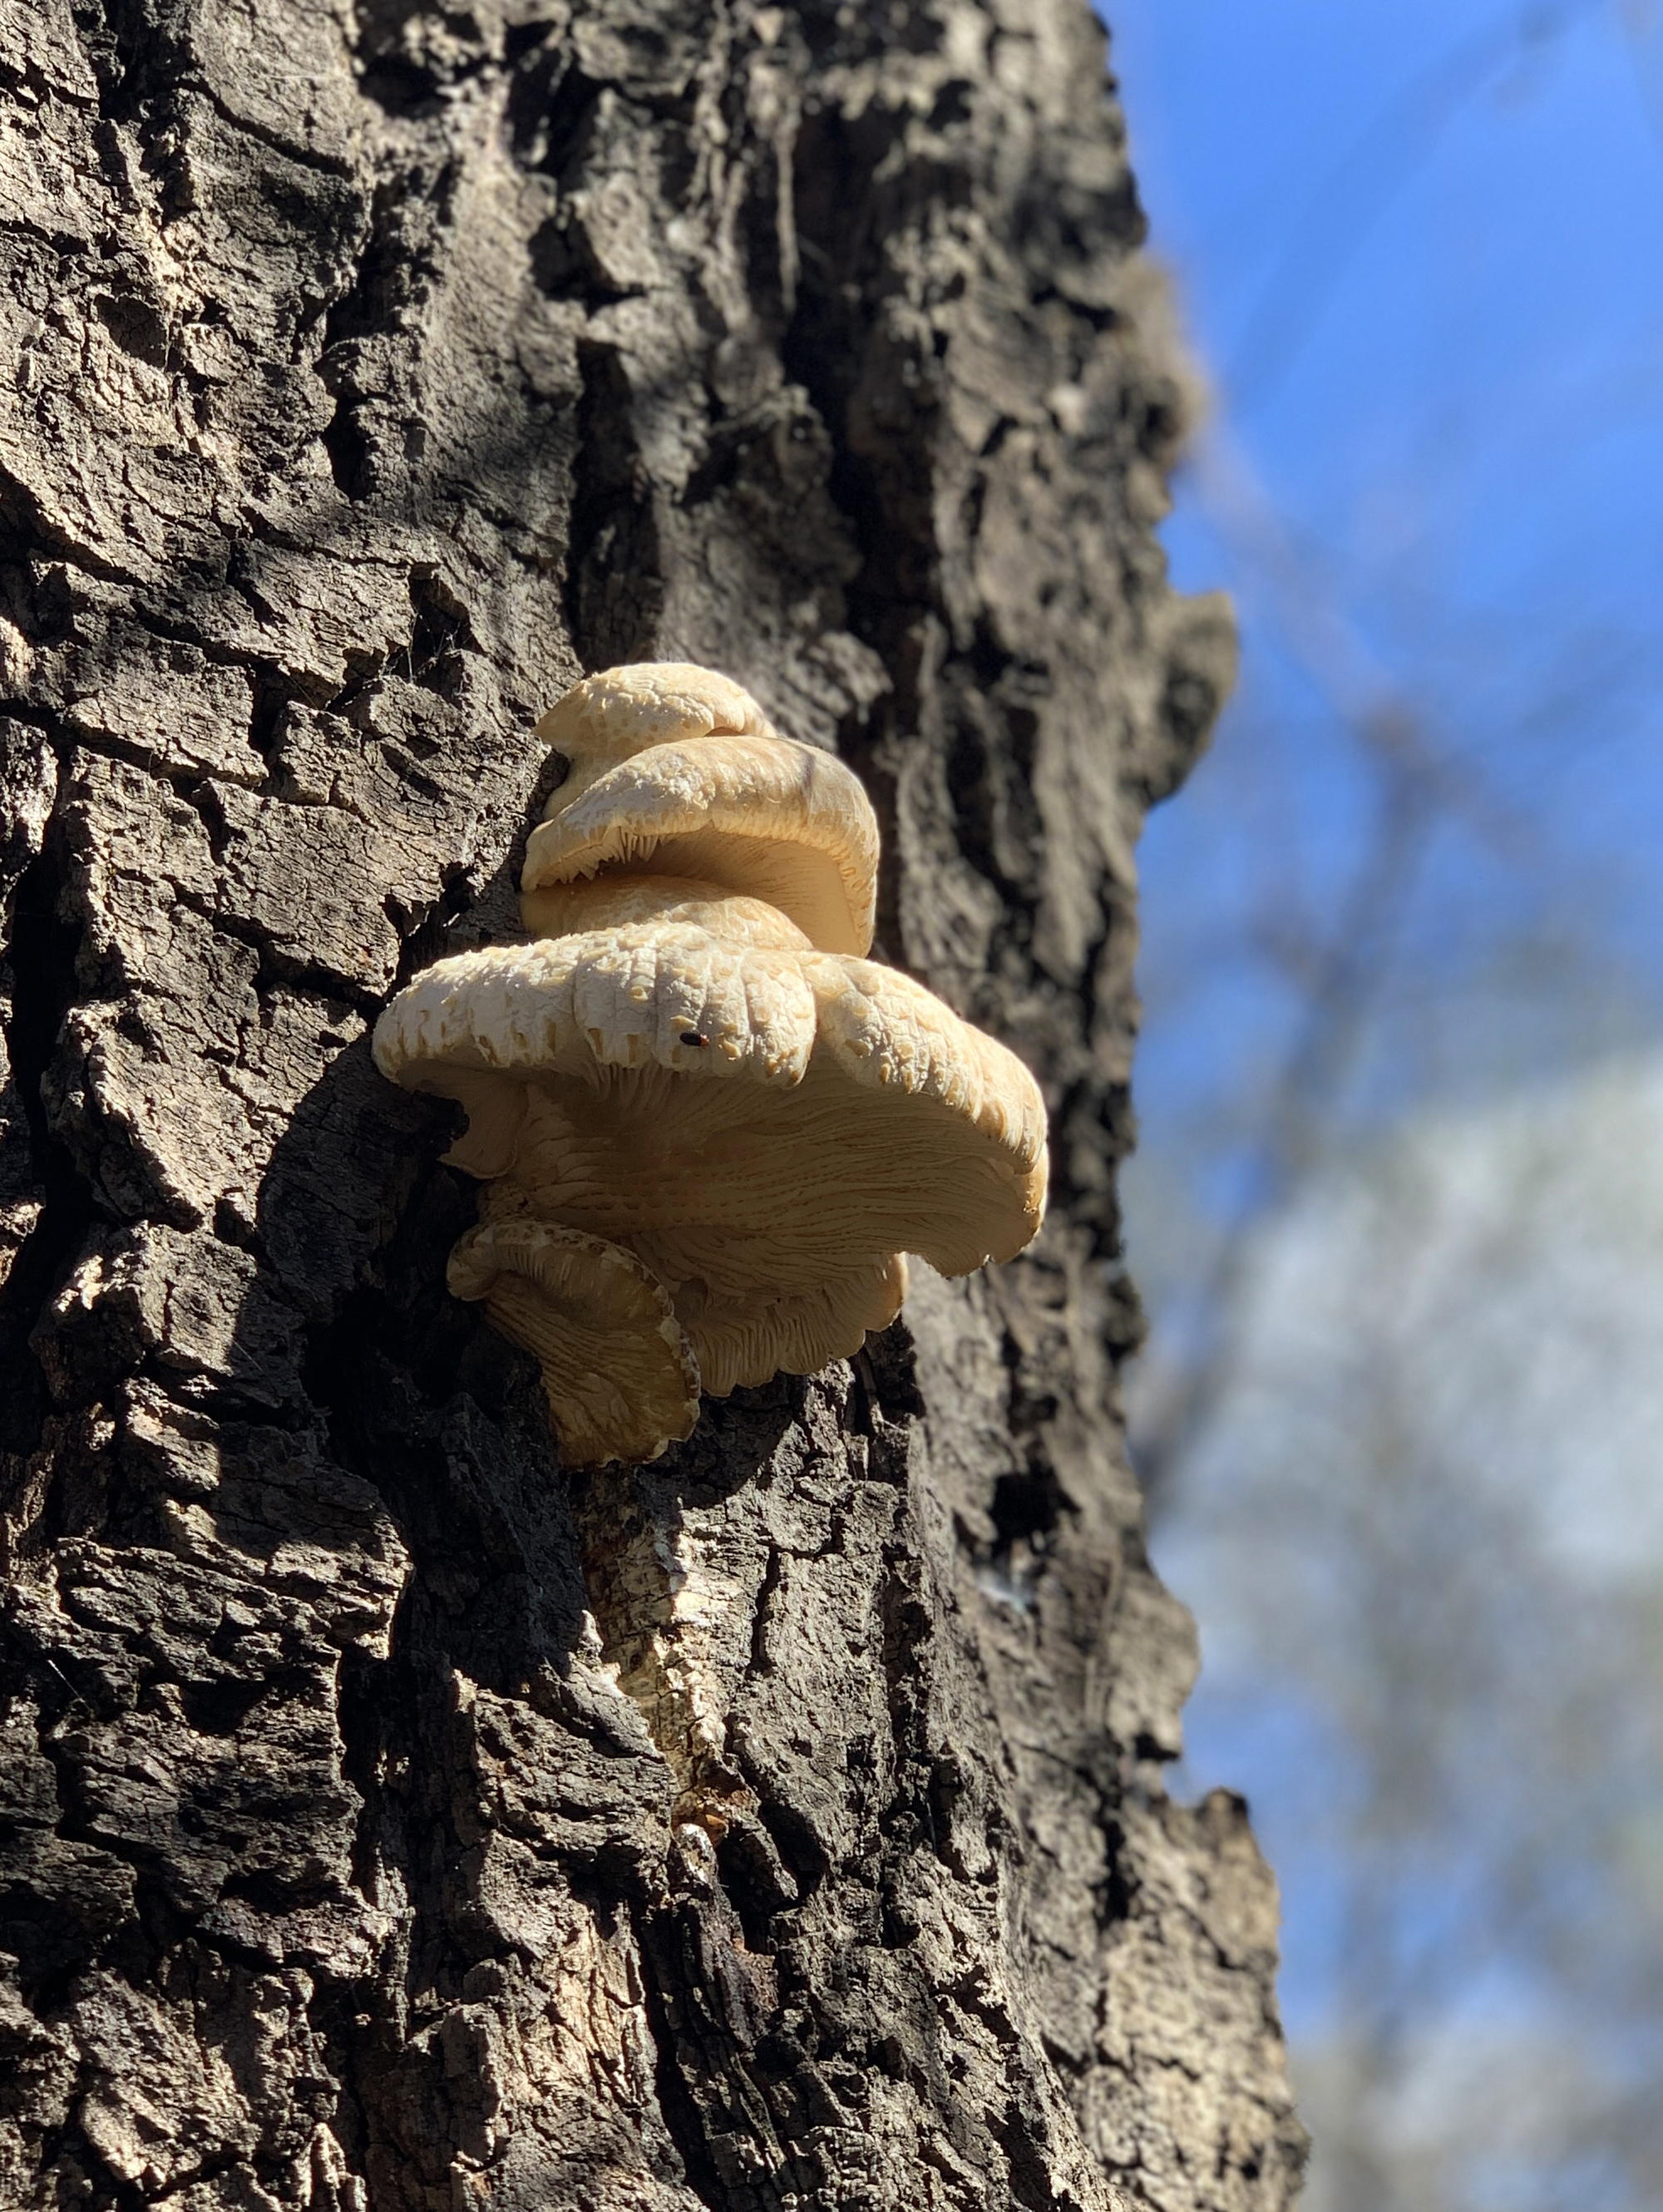 Mushroom Fungus Growing On Tree Bark